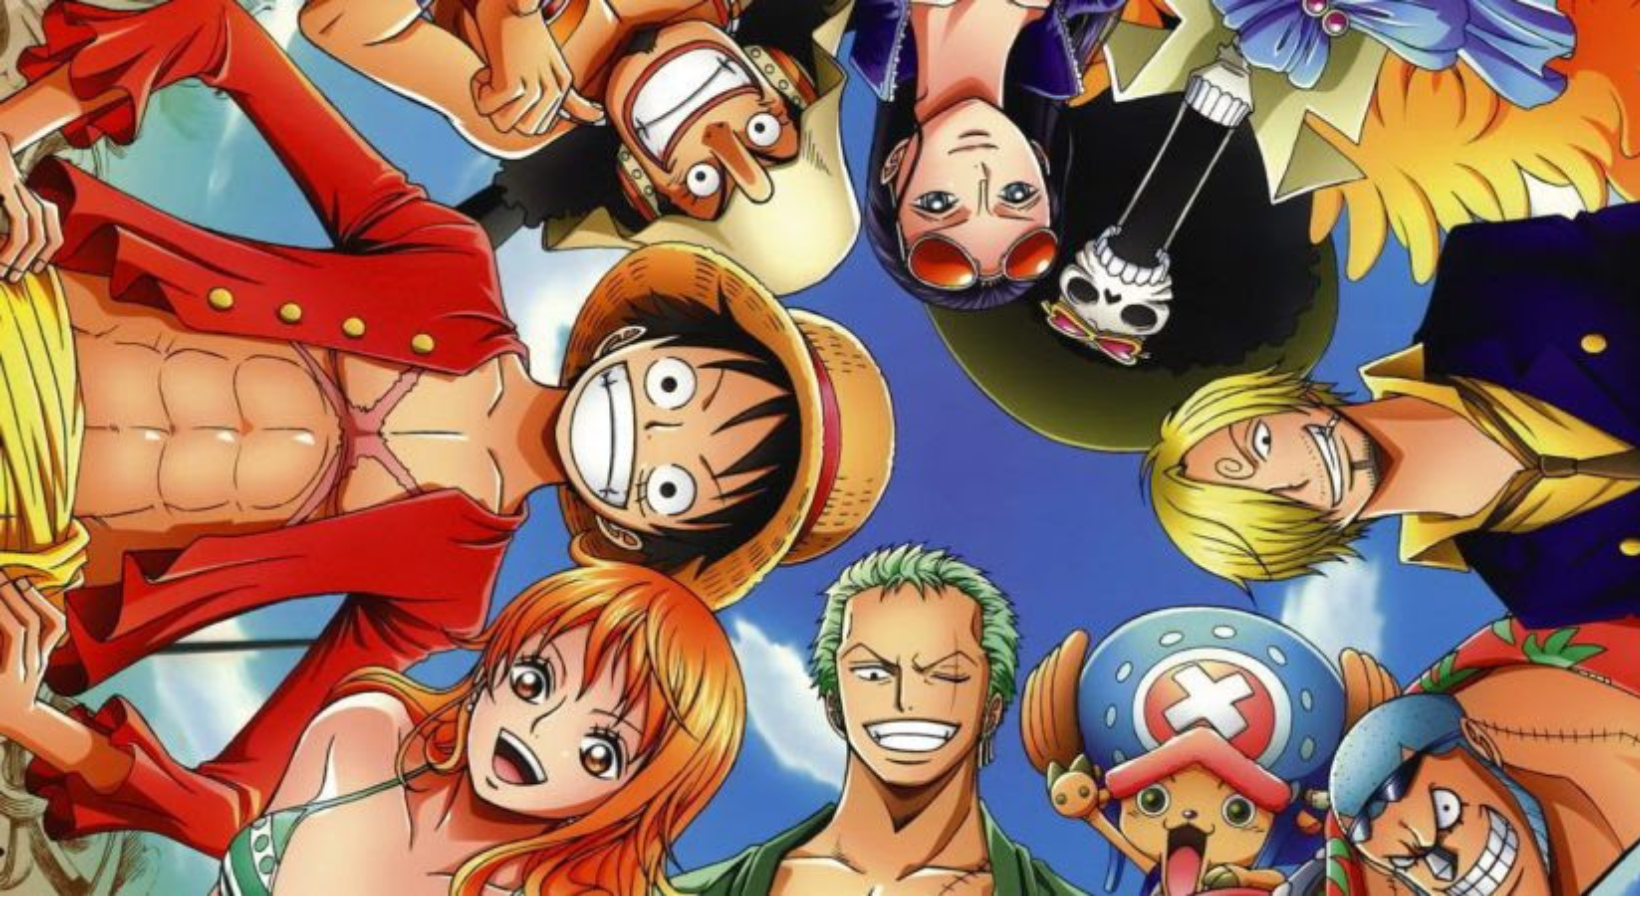 Panini leva Load Comics, o historiador João Carvalho e One Piece para  Animefriends 2023